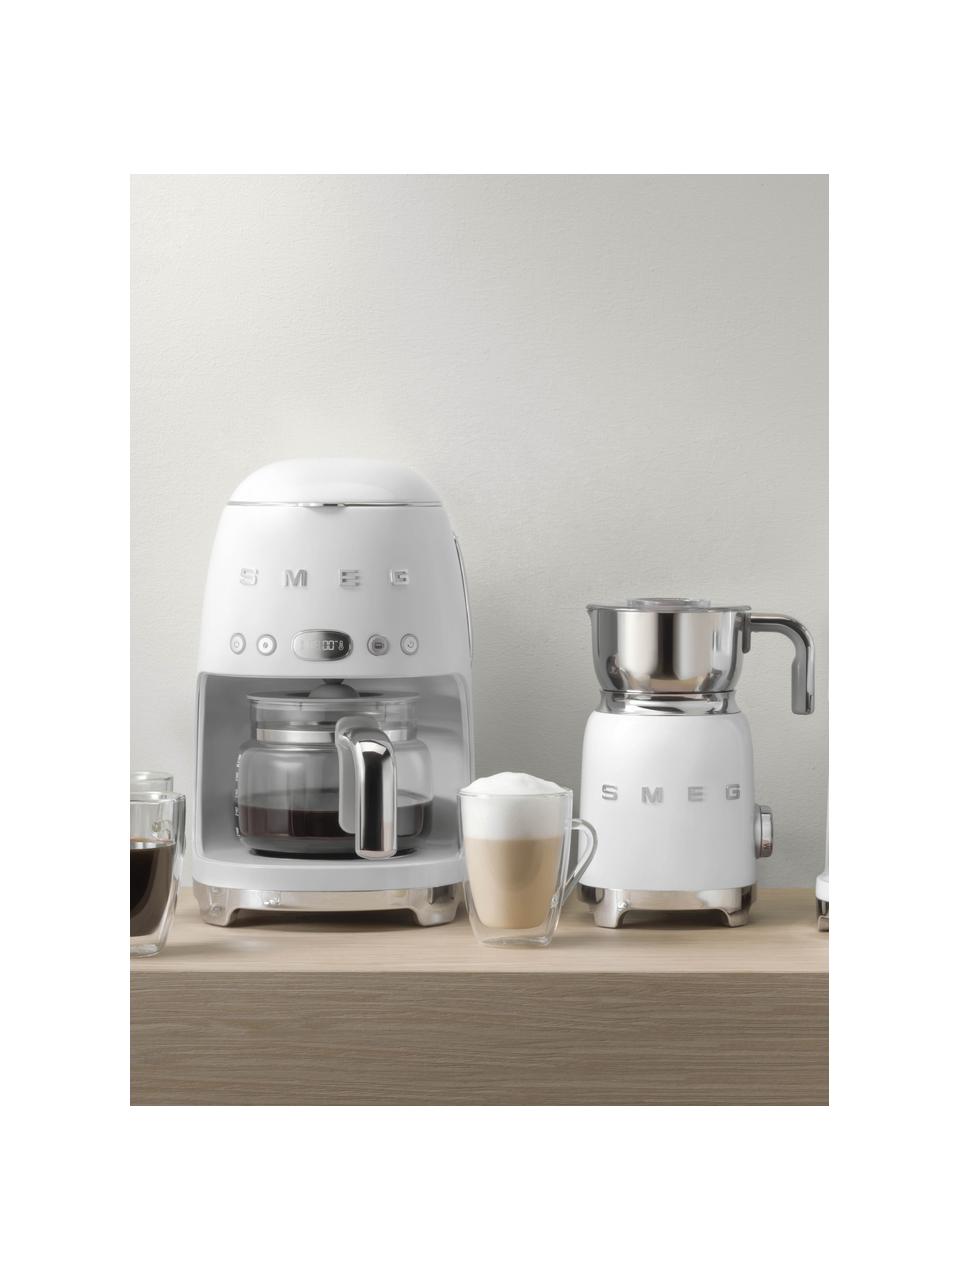 Filterkaffeemaschine 50's Style, Gehäuse: Metall, lackiert, Kanne: Glas, Weiß, glänzend, B 26 x H 36 cm